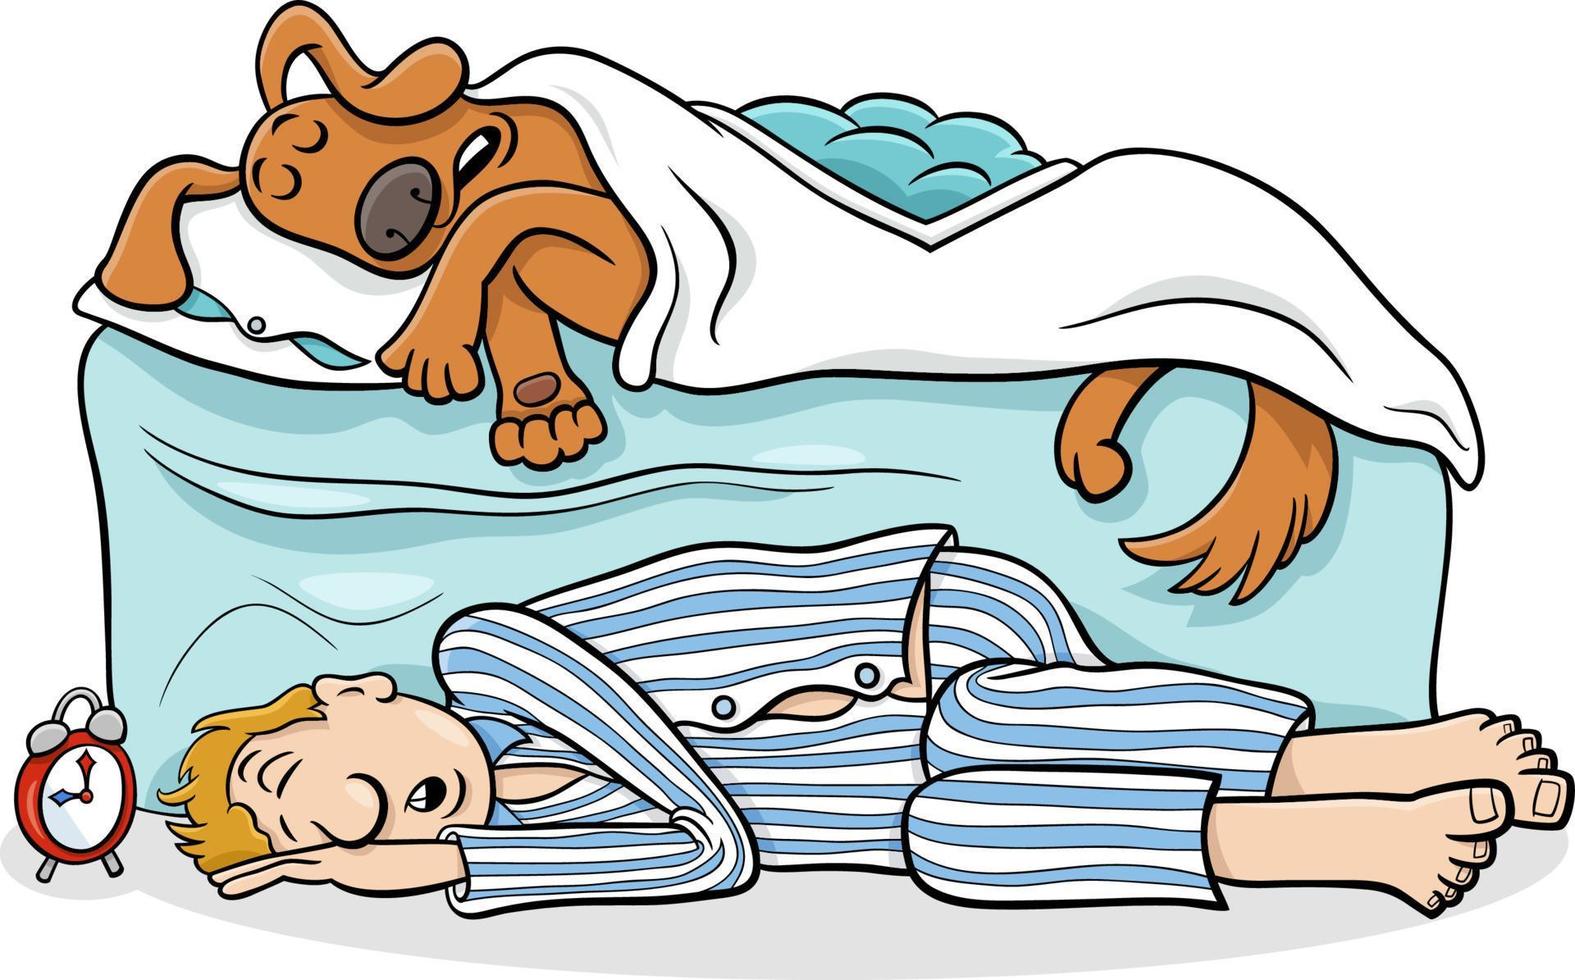 chien de dessin animé dormant dans son lit et son propriétaire sur le sol vecteur